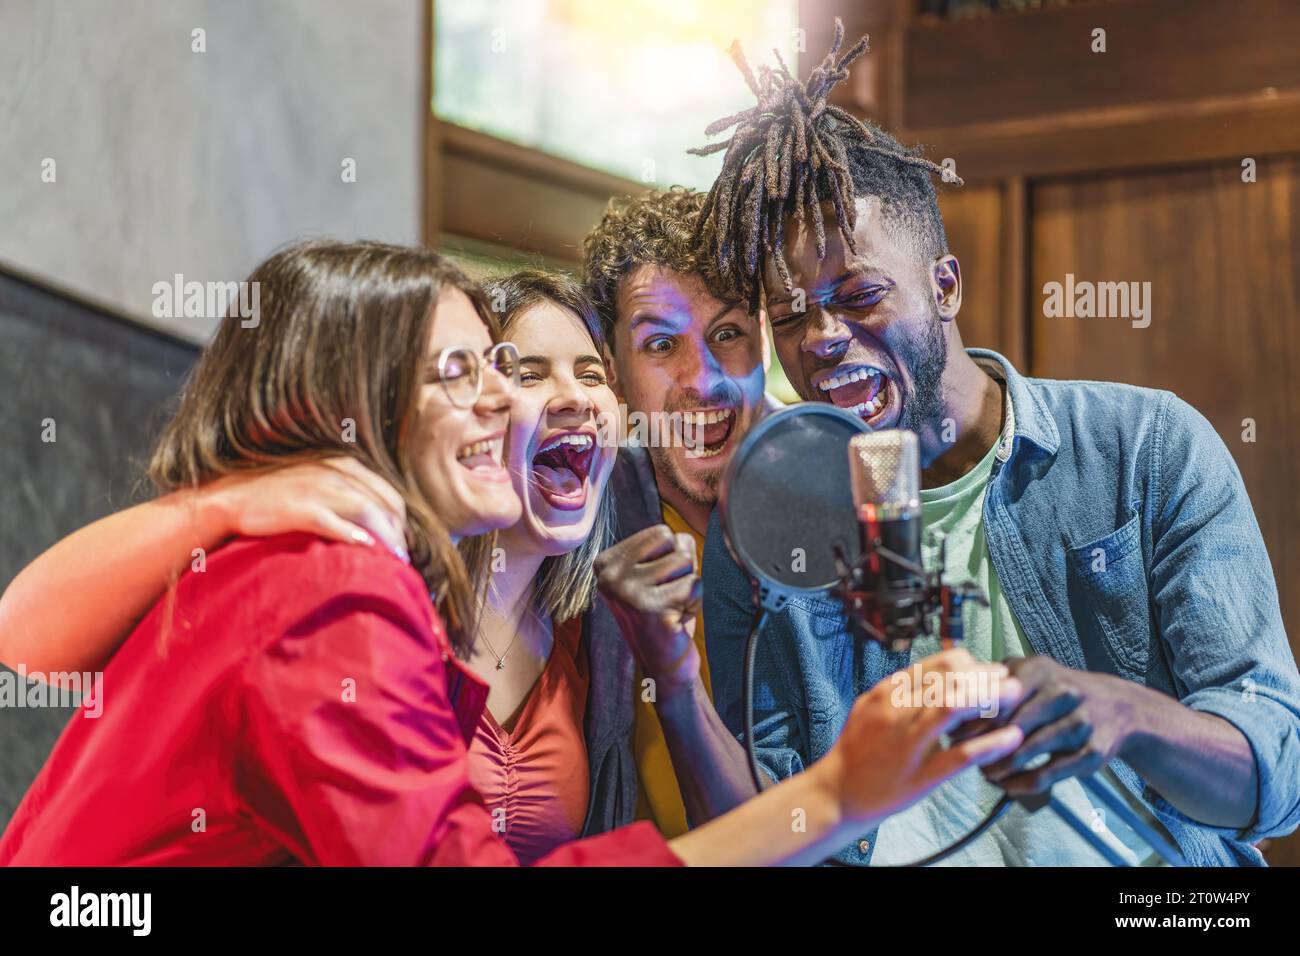 Un gruppo eterogeneo di giovani uomini e donne che canta con fervore intorno a un microfono a condensatore, mostrando il loro entusiasmo e la loro passione musicale. Foto Stock